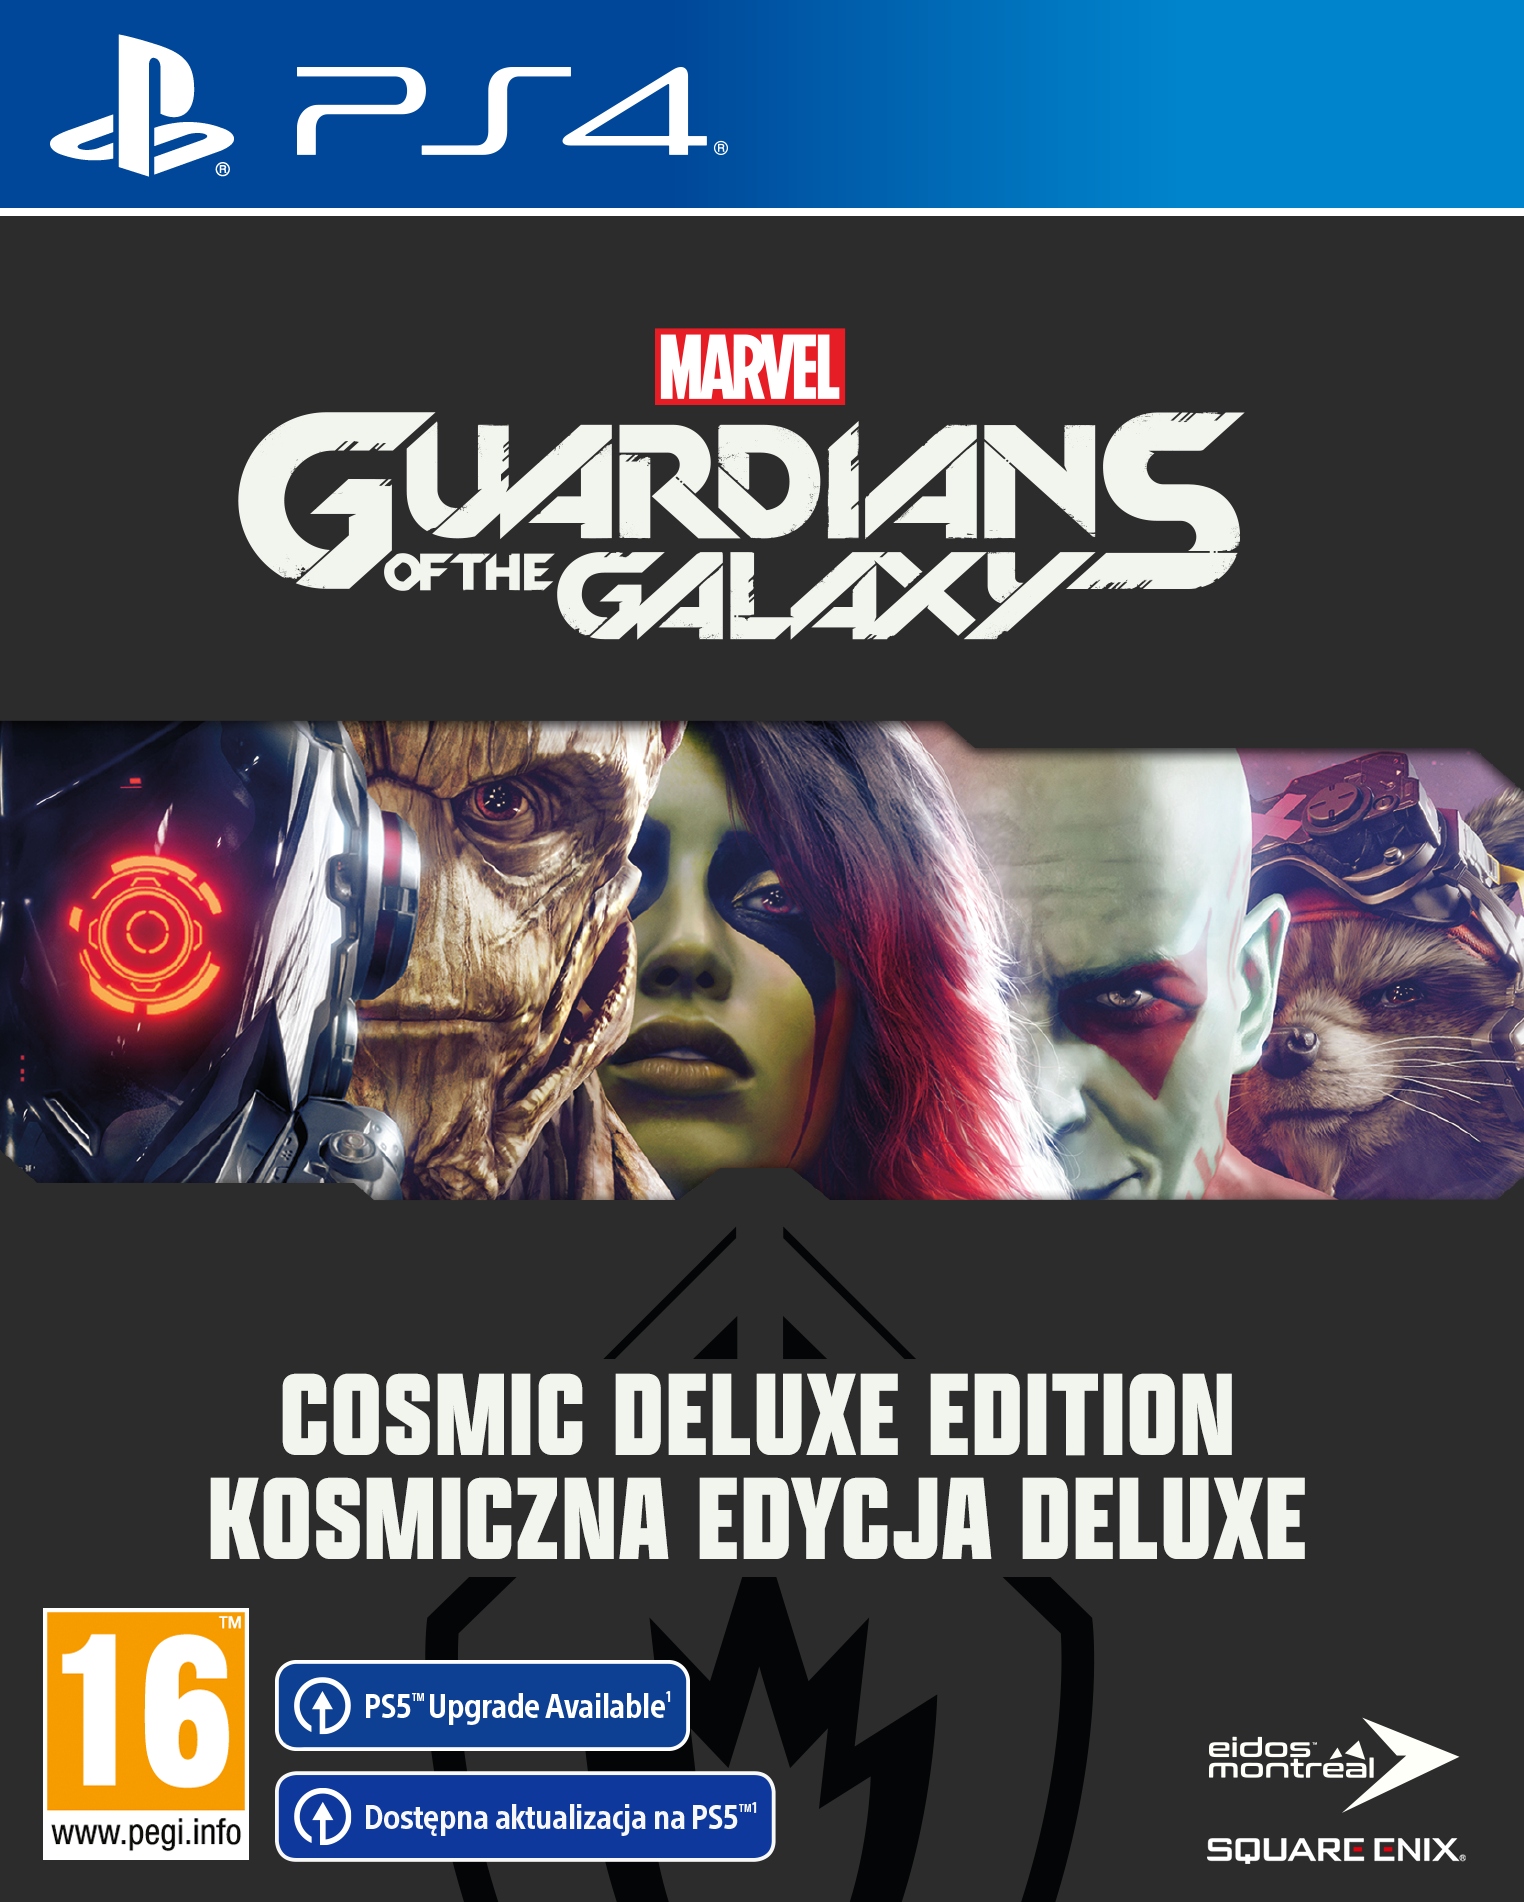 Игры пс делюкс март. Стражи Галактики пс4. Guardian of the Galaxy Deluxe Edition. Сони плейстейшен 4 игра Марвел. Стражи Галактики игра на сони плейстейшен.